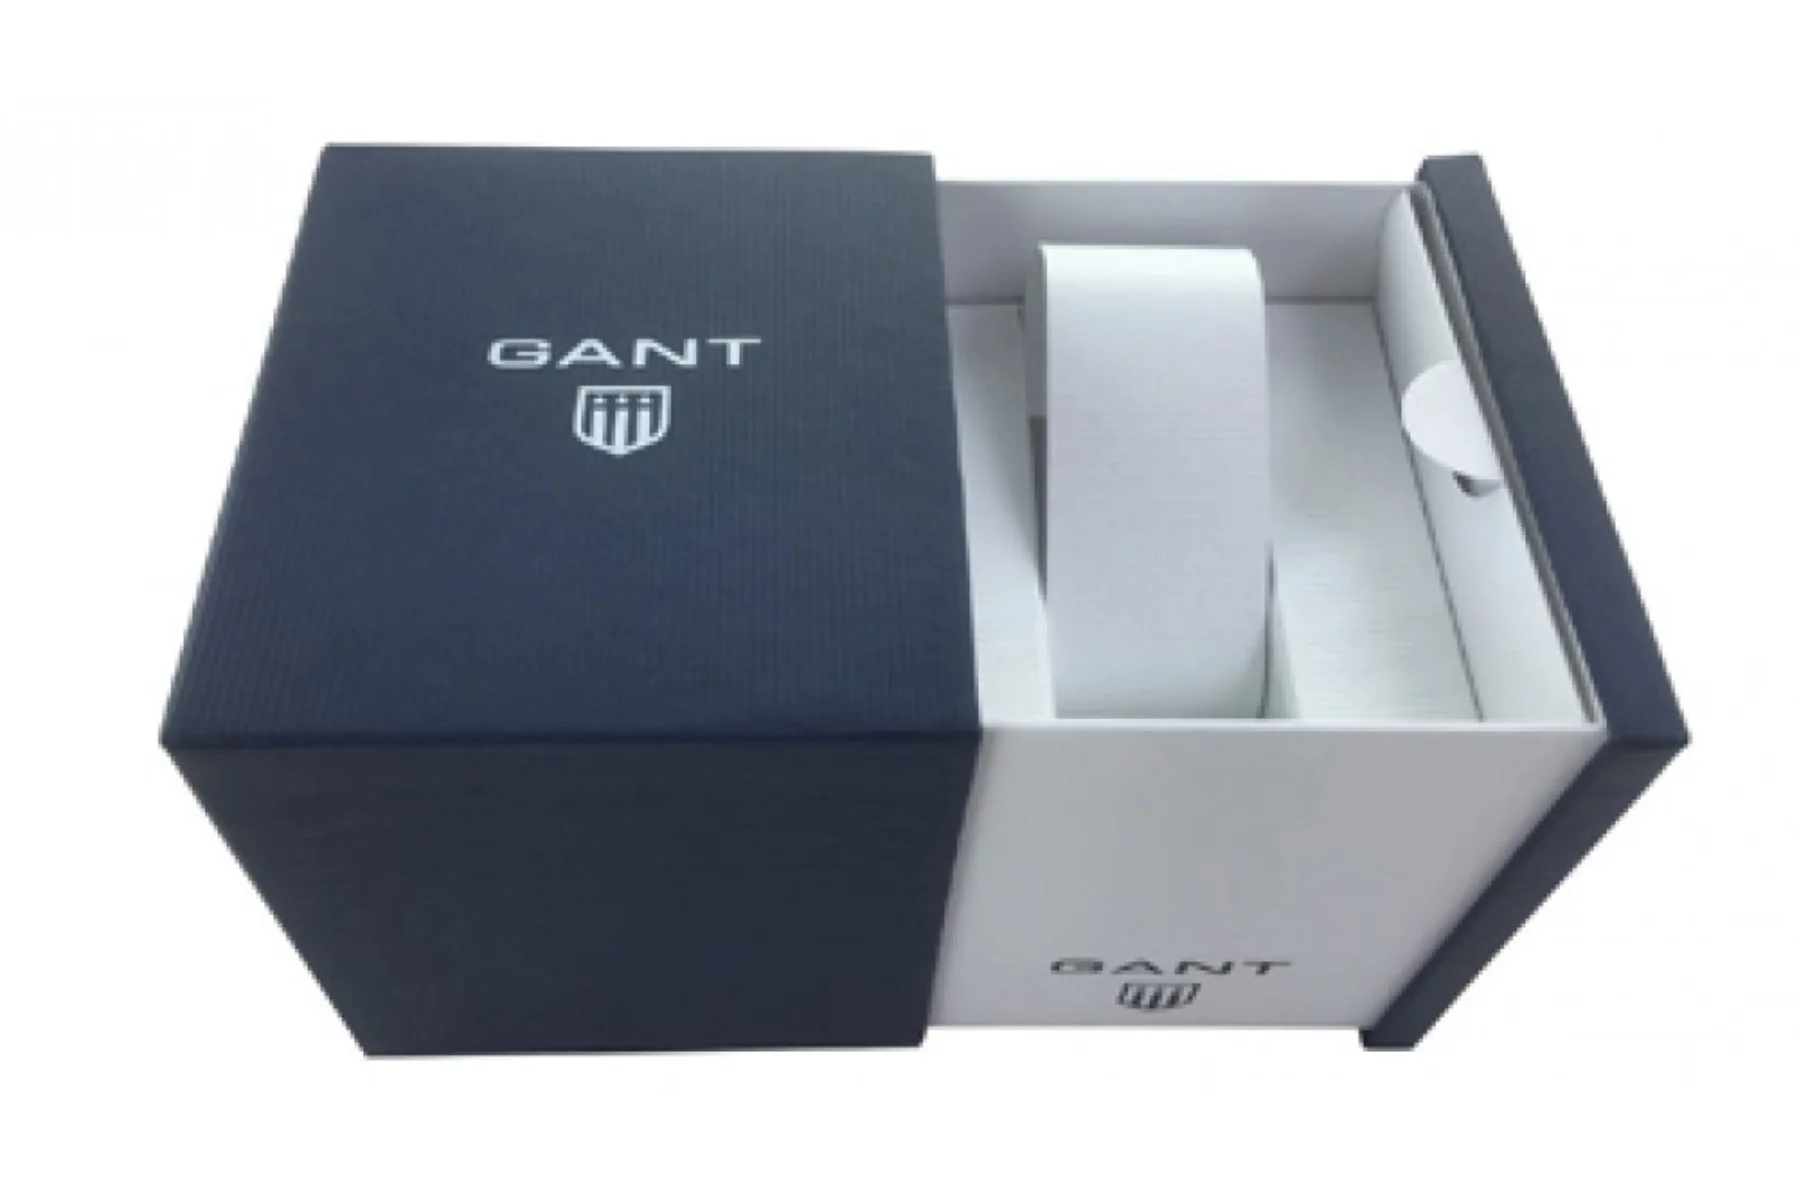 Dámske náramkové hodinky Gant G181003 kvalita